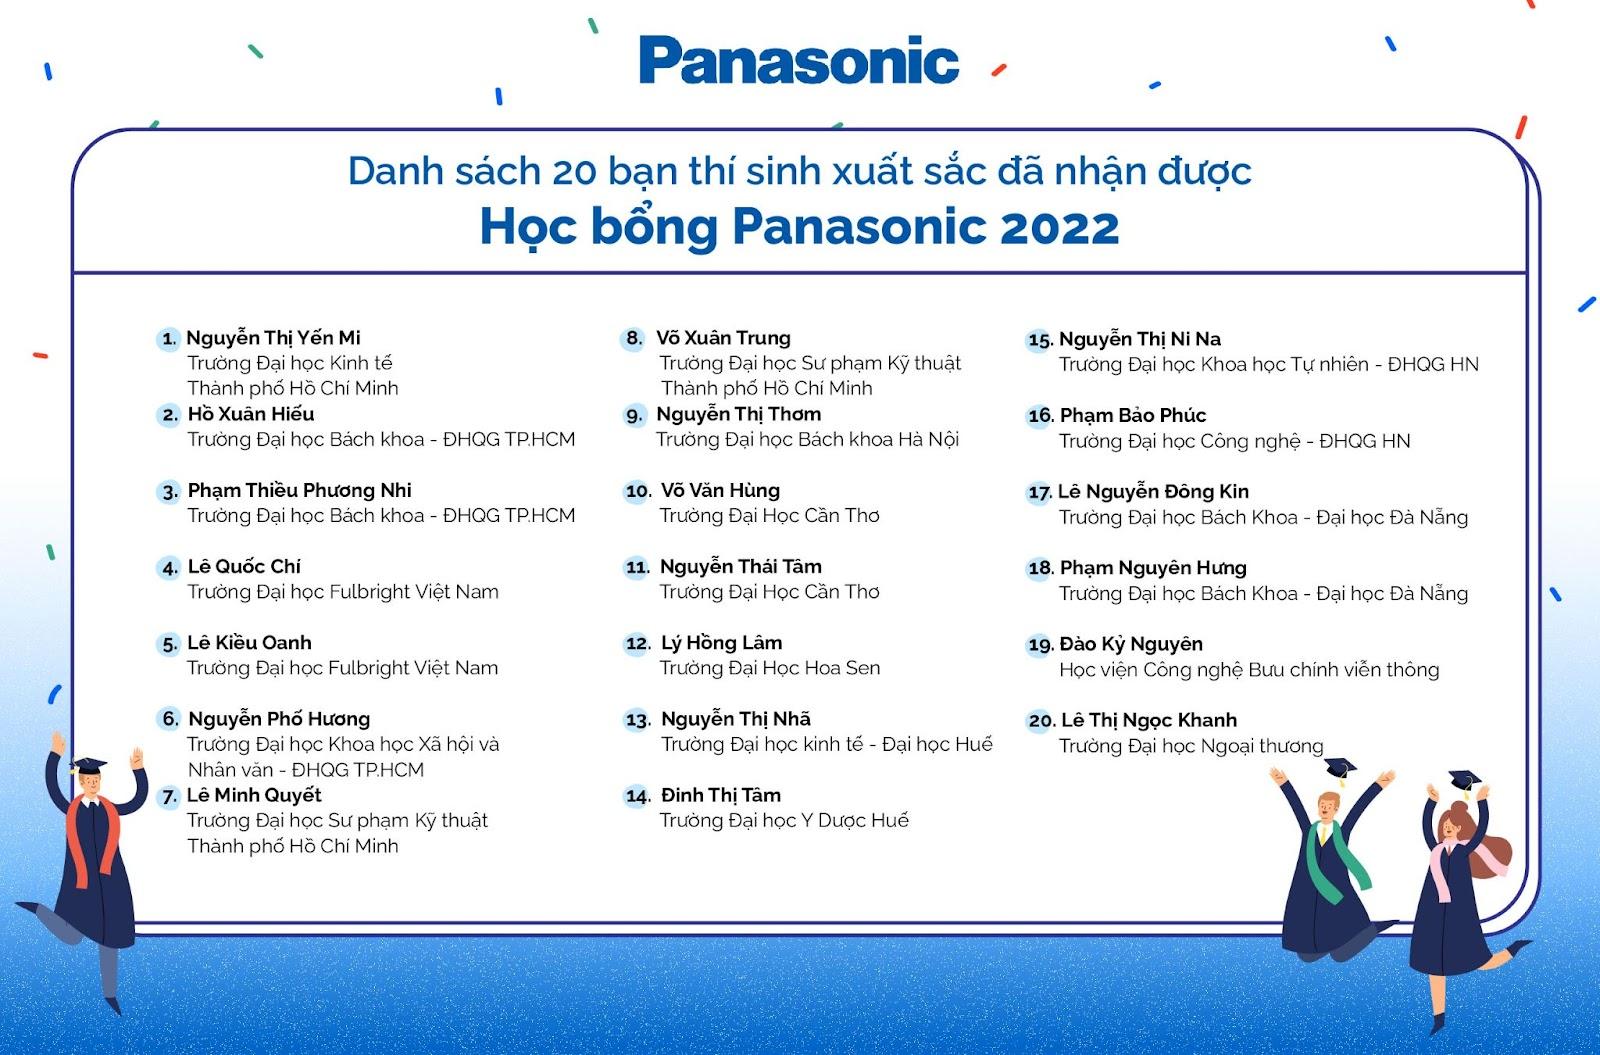 Lộ diện 20 gương mặt nhận học bổng giá trị của Panasonic 2022 - ảnh 2